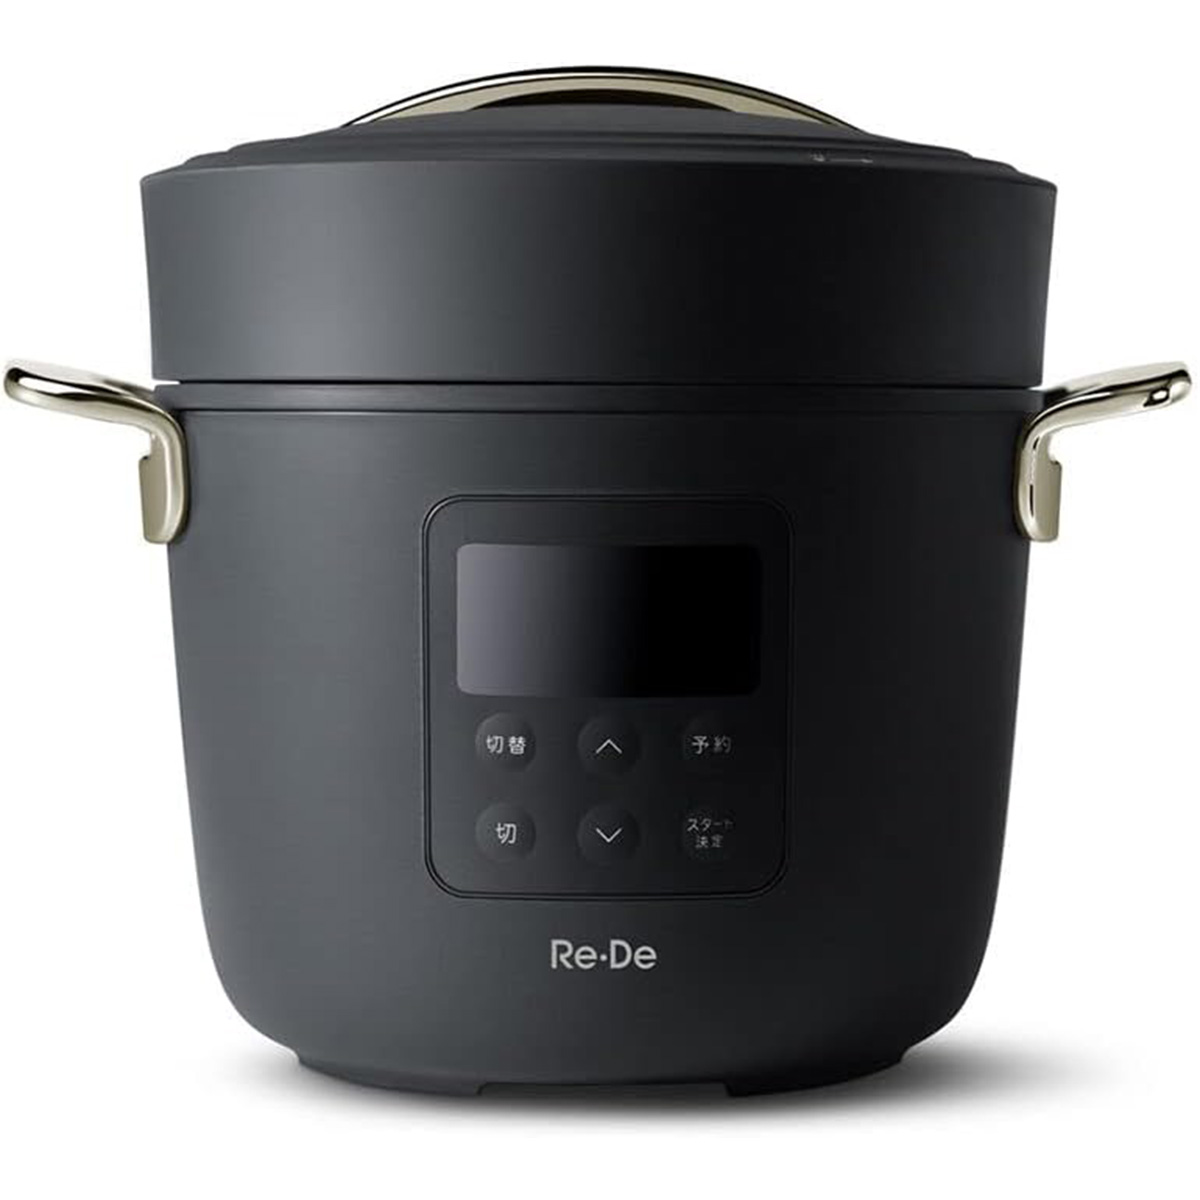 【5年保証付】Re・De Pot リデポット 電気圧力鍋 2L レシピブック付き 無水調理 炊飯 おしゃれ ブラック